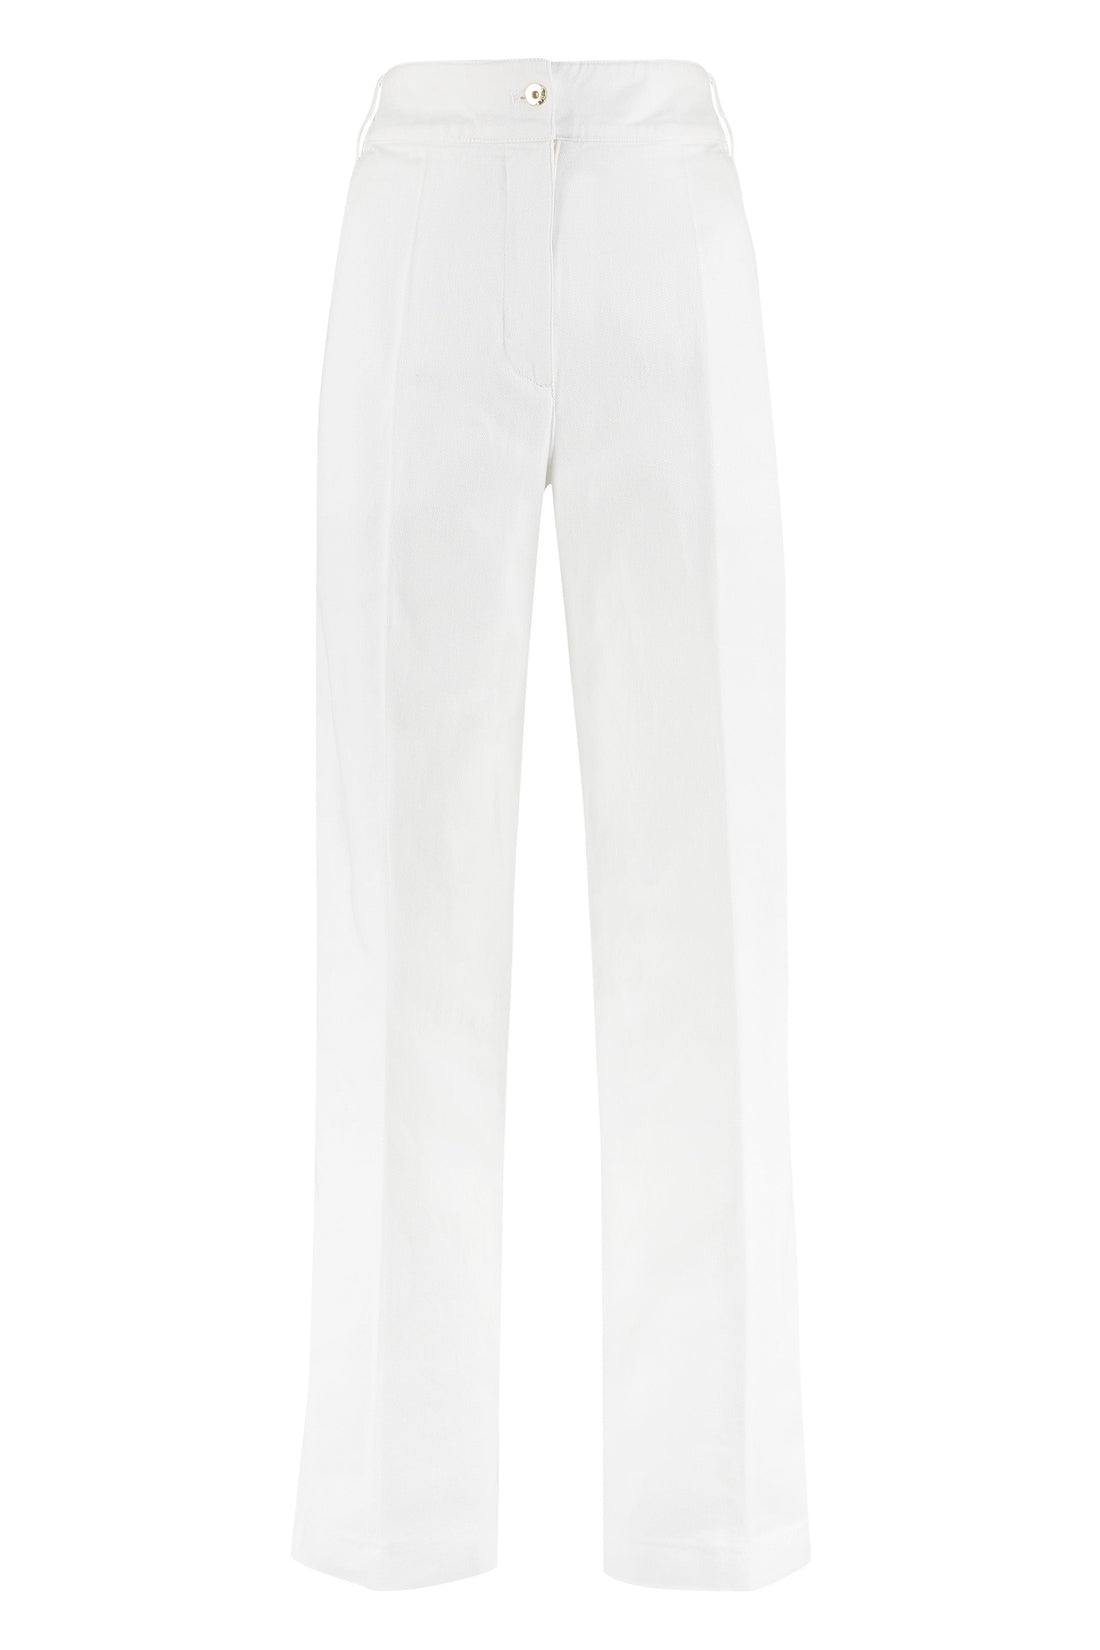 Patou-OUTLET-SALE-High-rise cotton trousers-ARCHIVIST